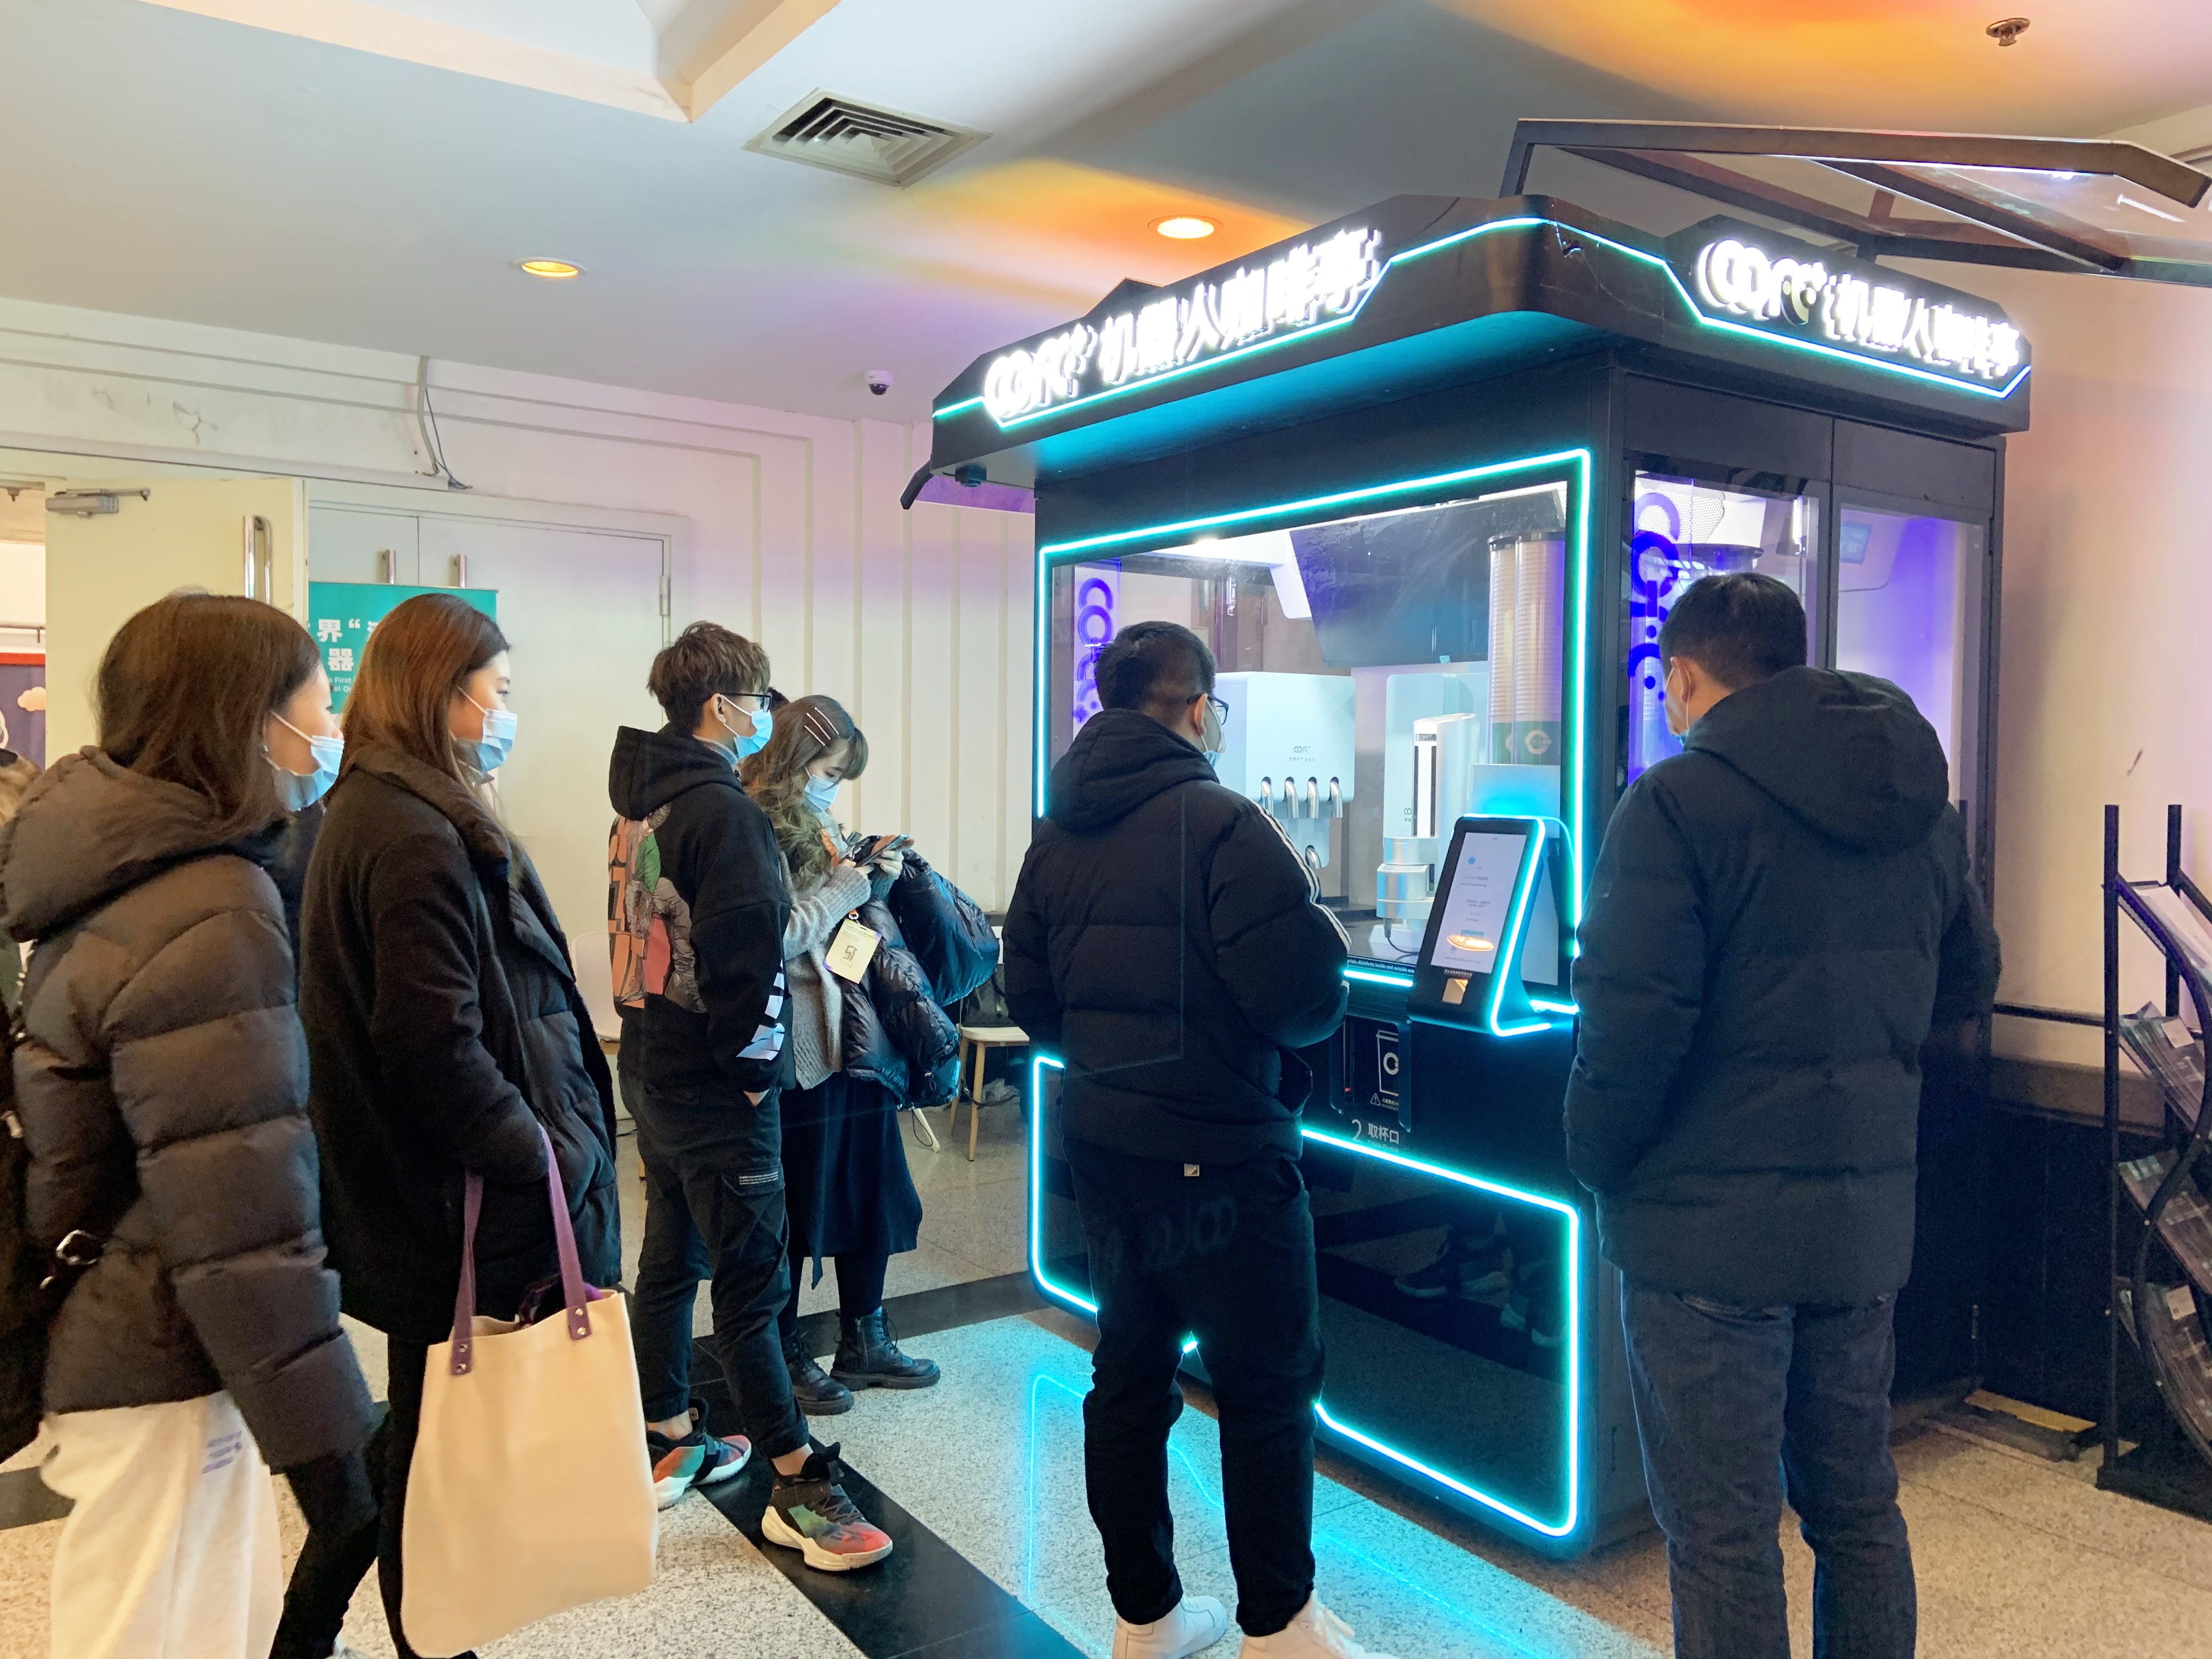 机器人咖啡亮相上海创博会，引领未来创意新生活